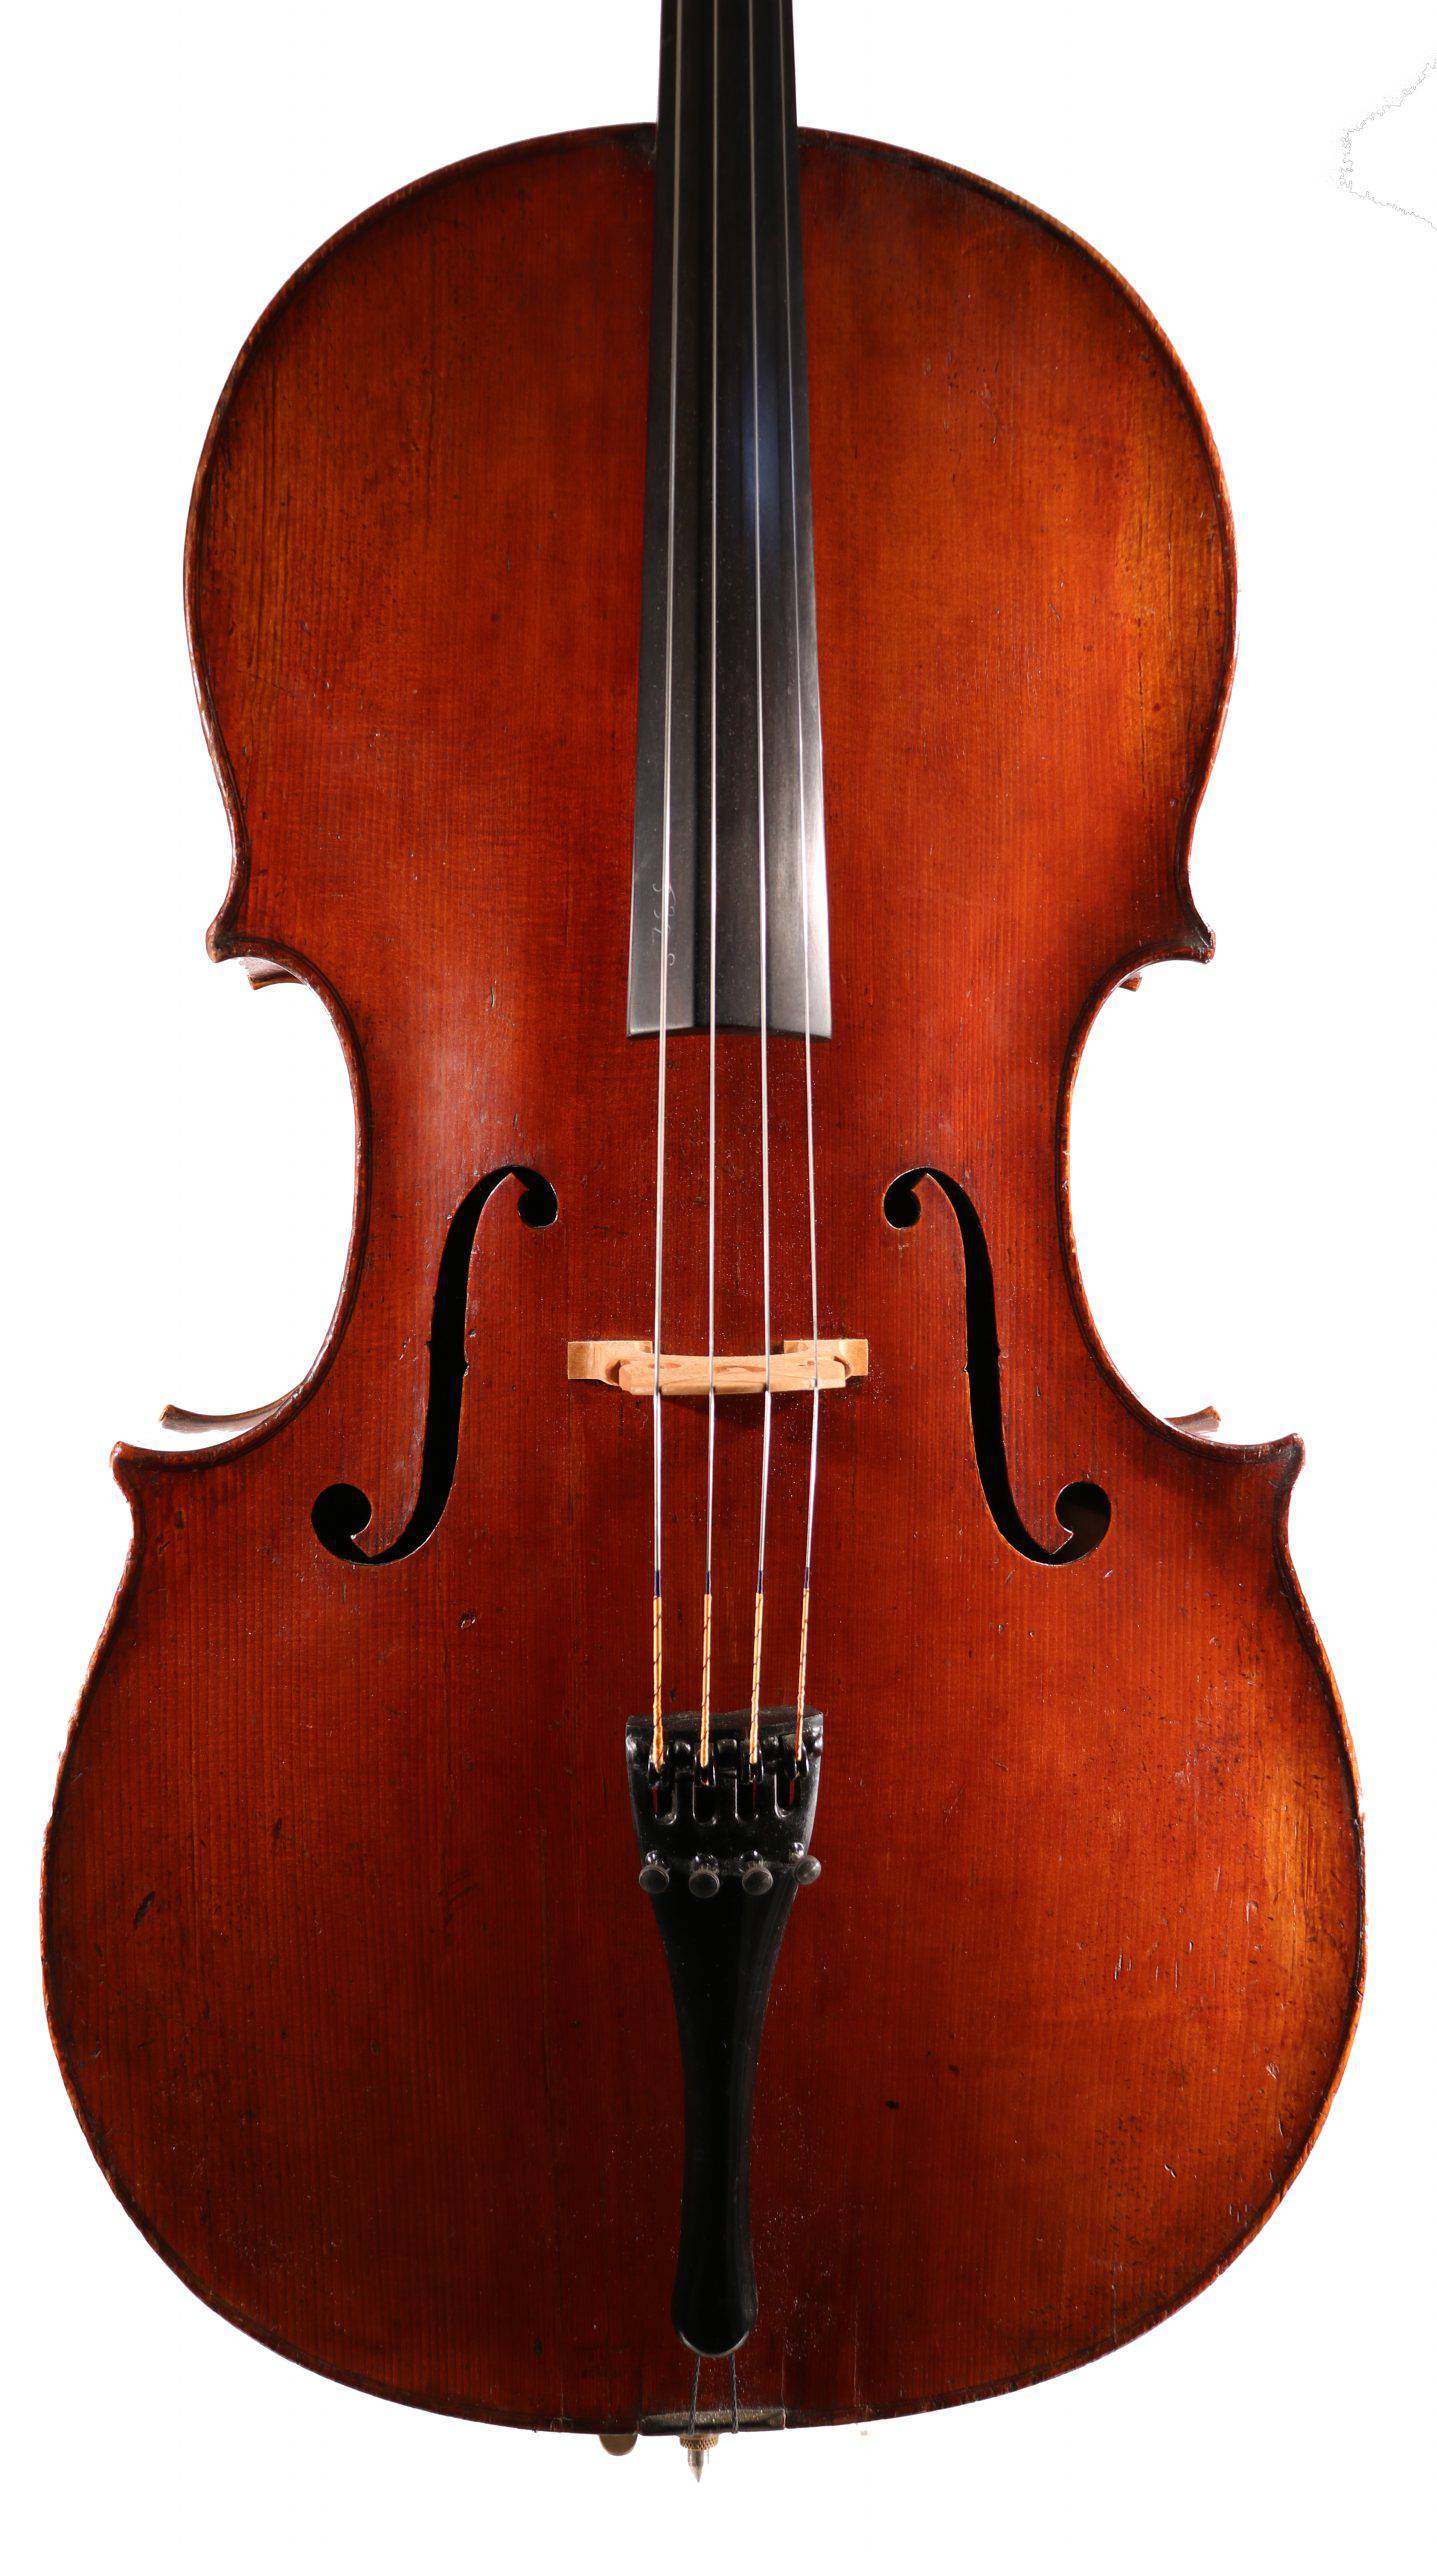 ACR Cello